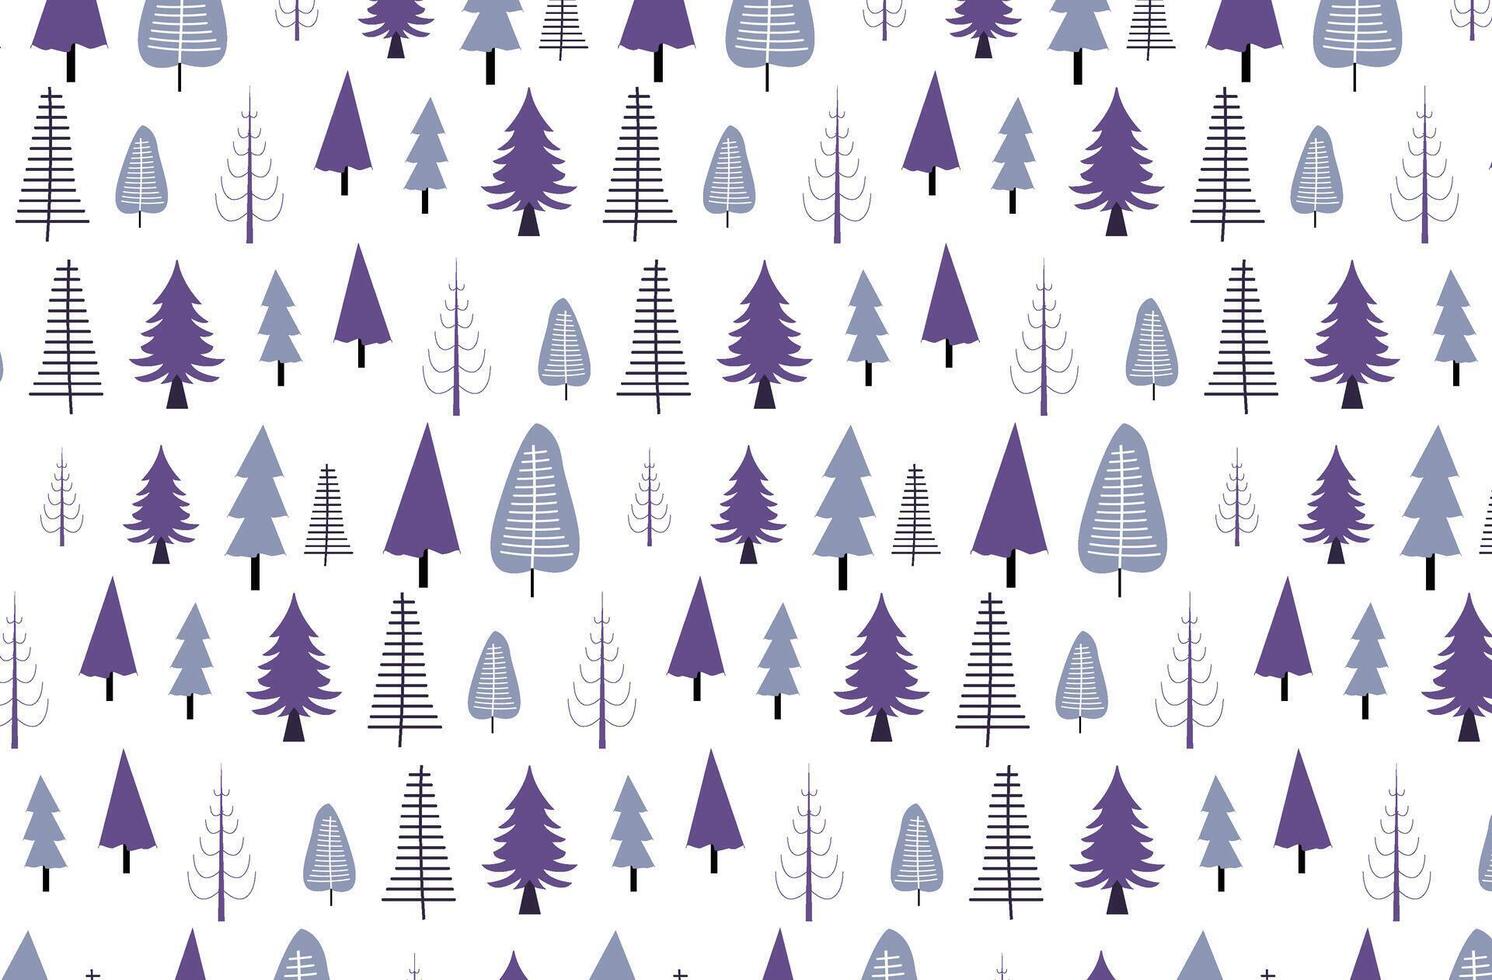 gran, gran träd silhuetter, minimal vinter- sömlös mönster vektor